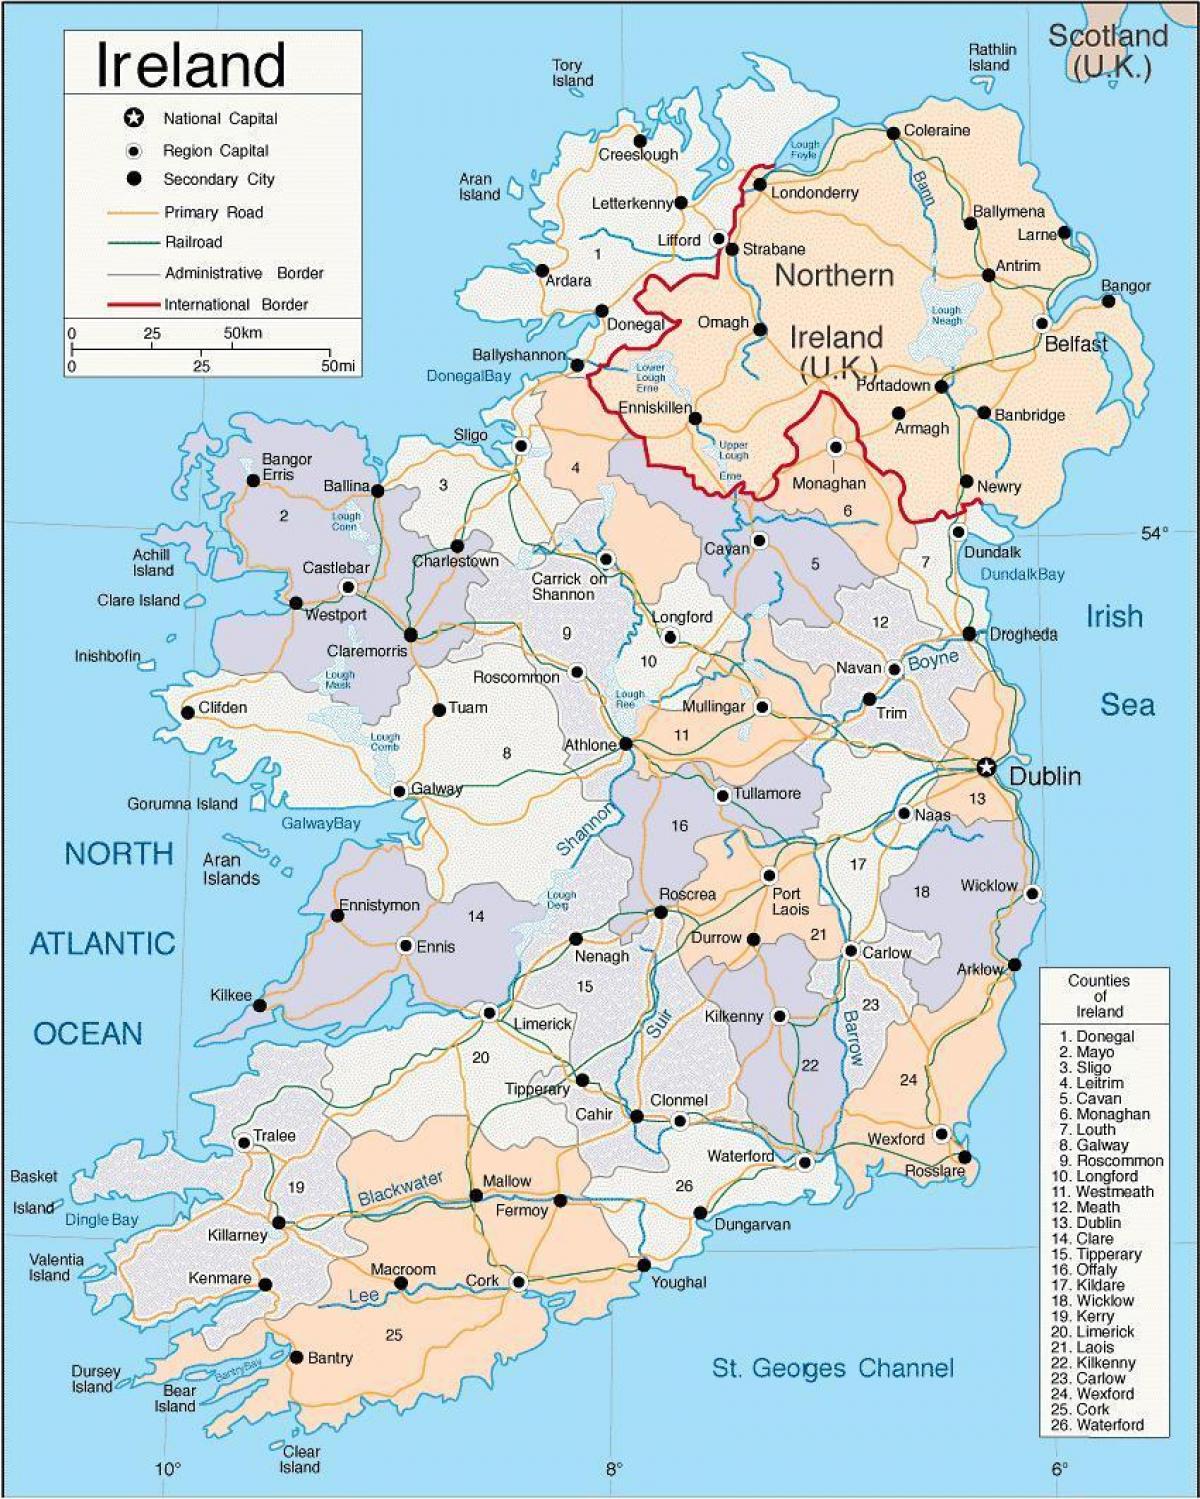 แผนที่ของไอร์แลนด์มันแตกต่างกันยังรวมถึงเมือ